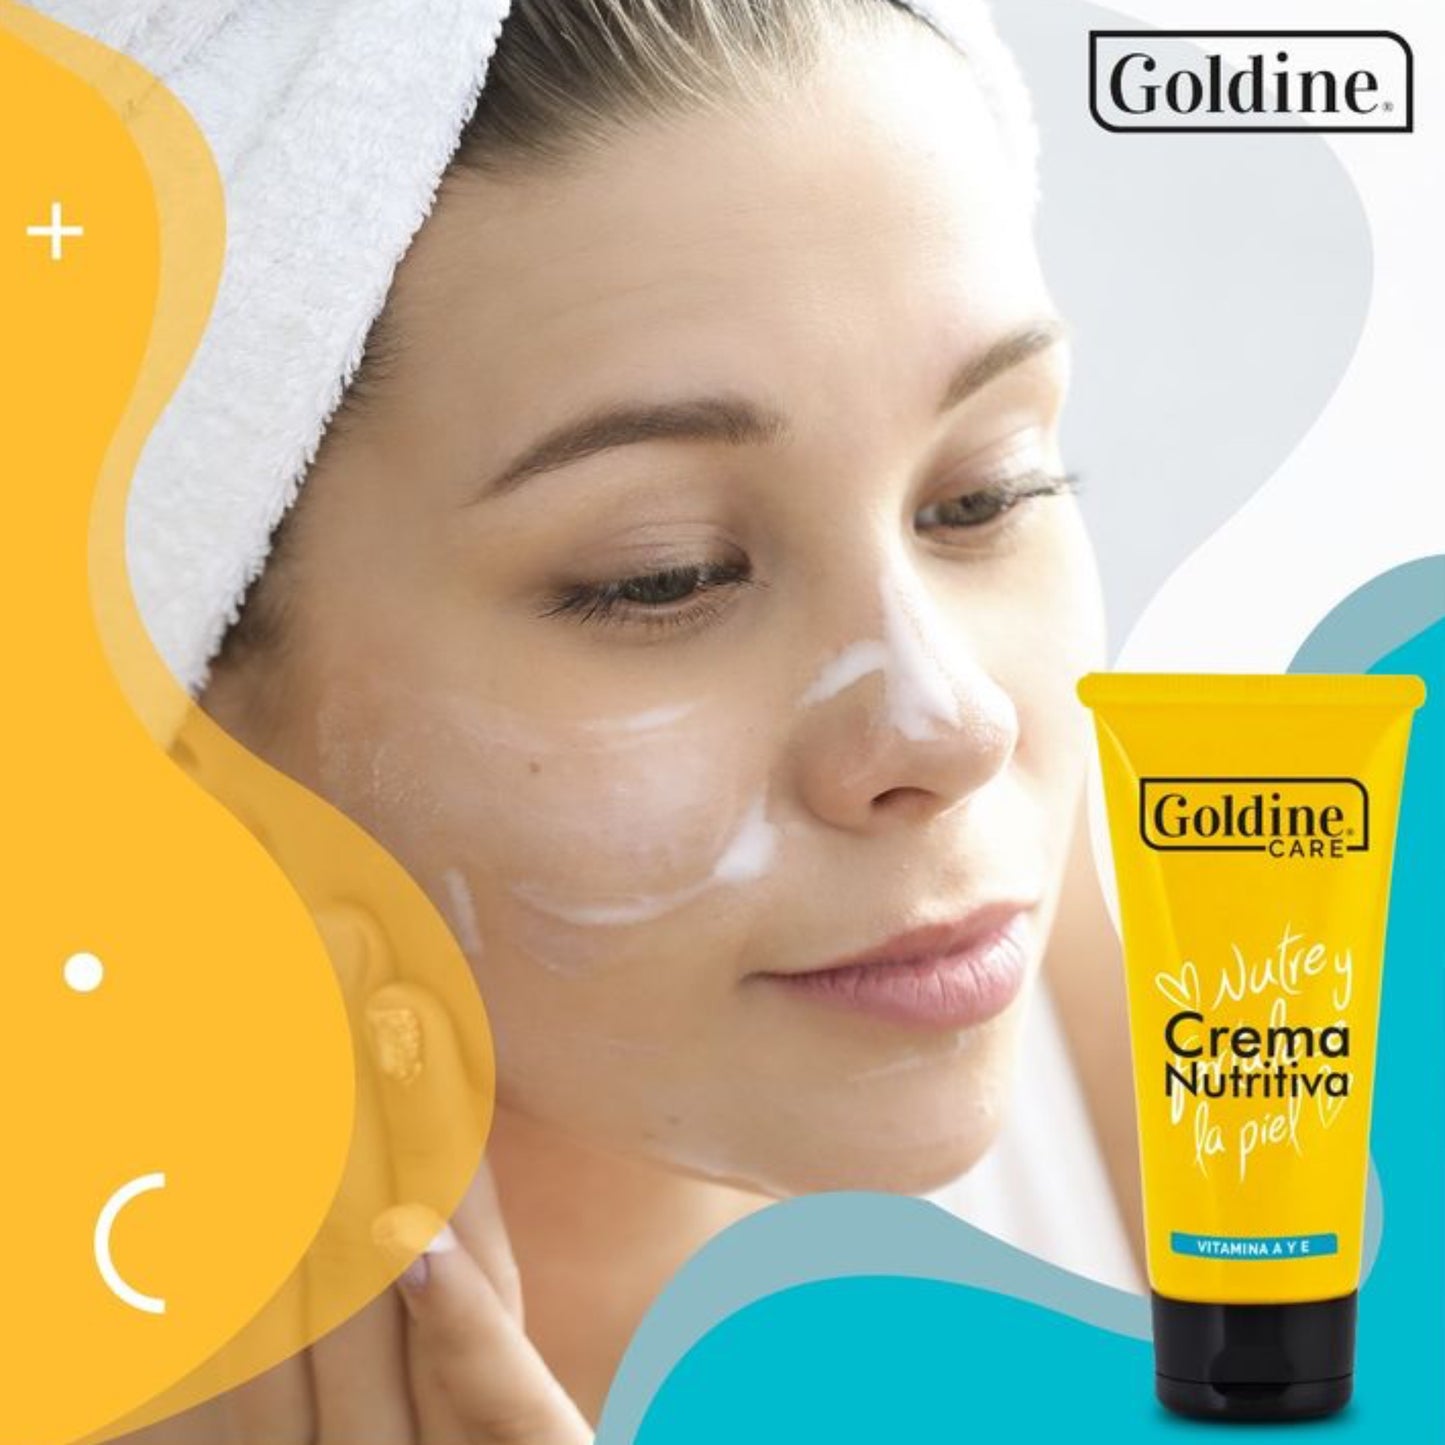 Crema nutritiva Goldine provee adecuada nutrición para la piel, previene envejecimiento prematuro, atenúa lineas de expresión.